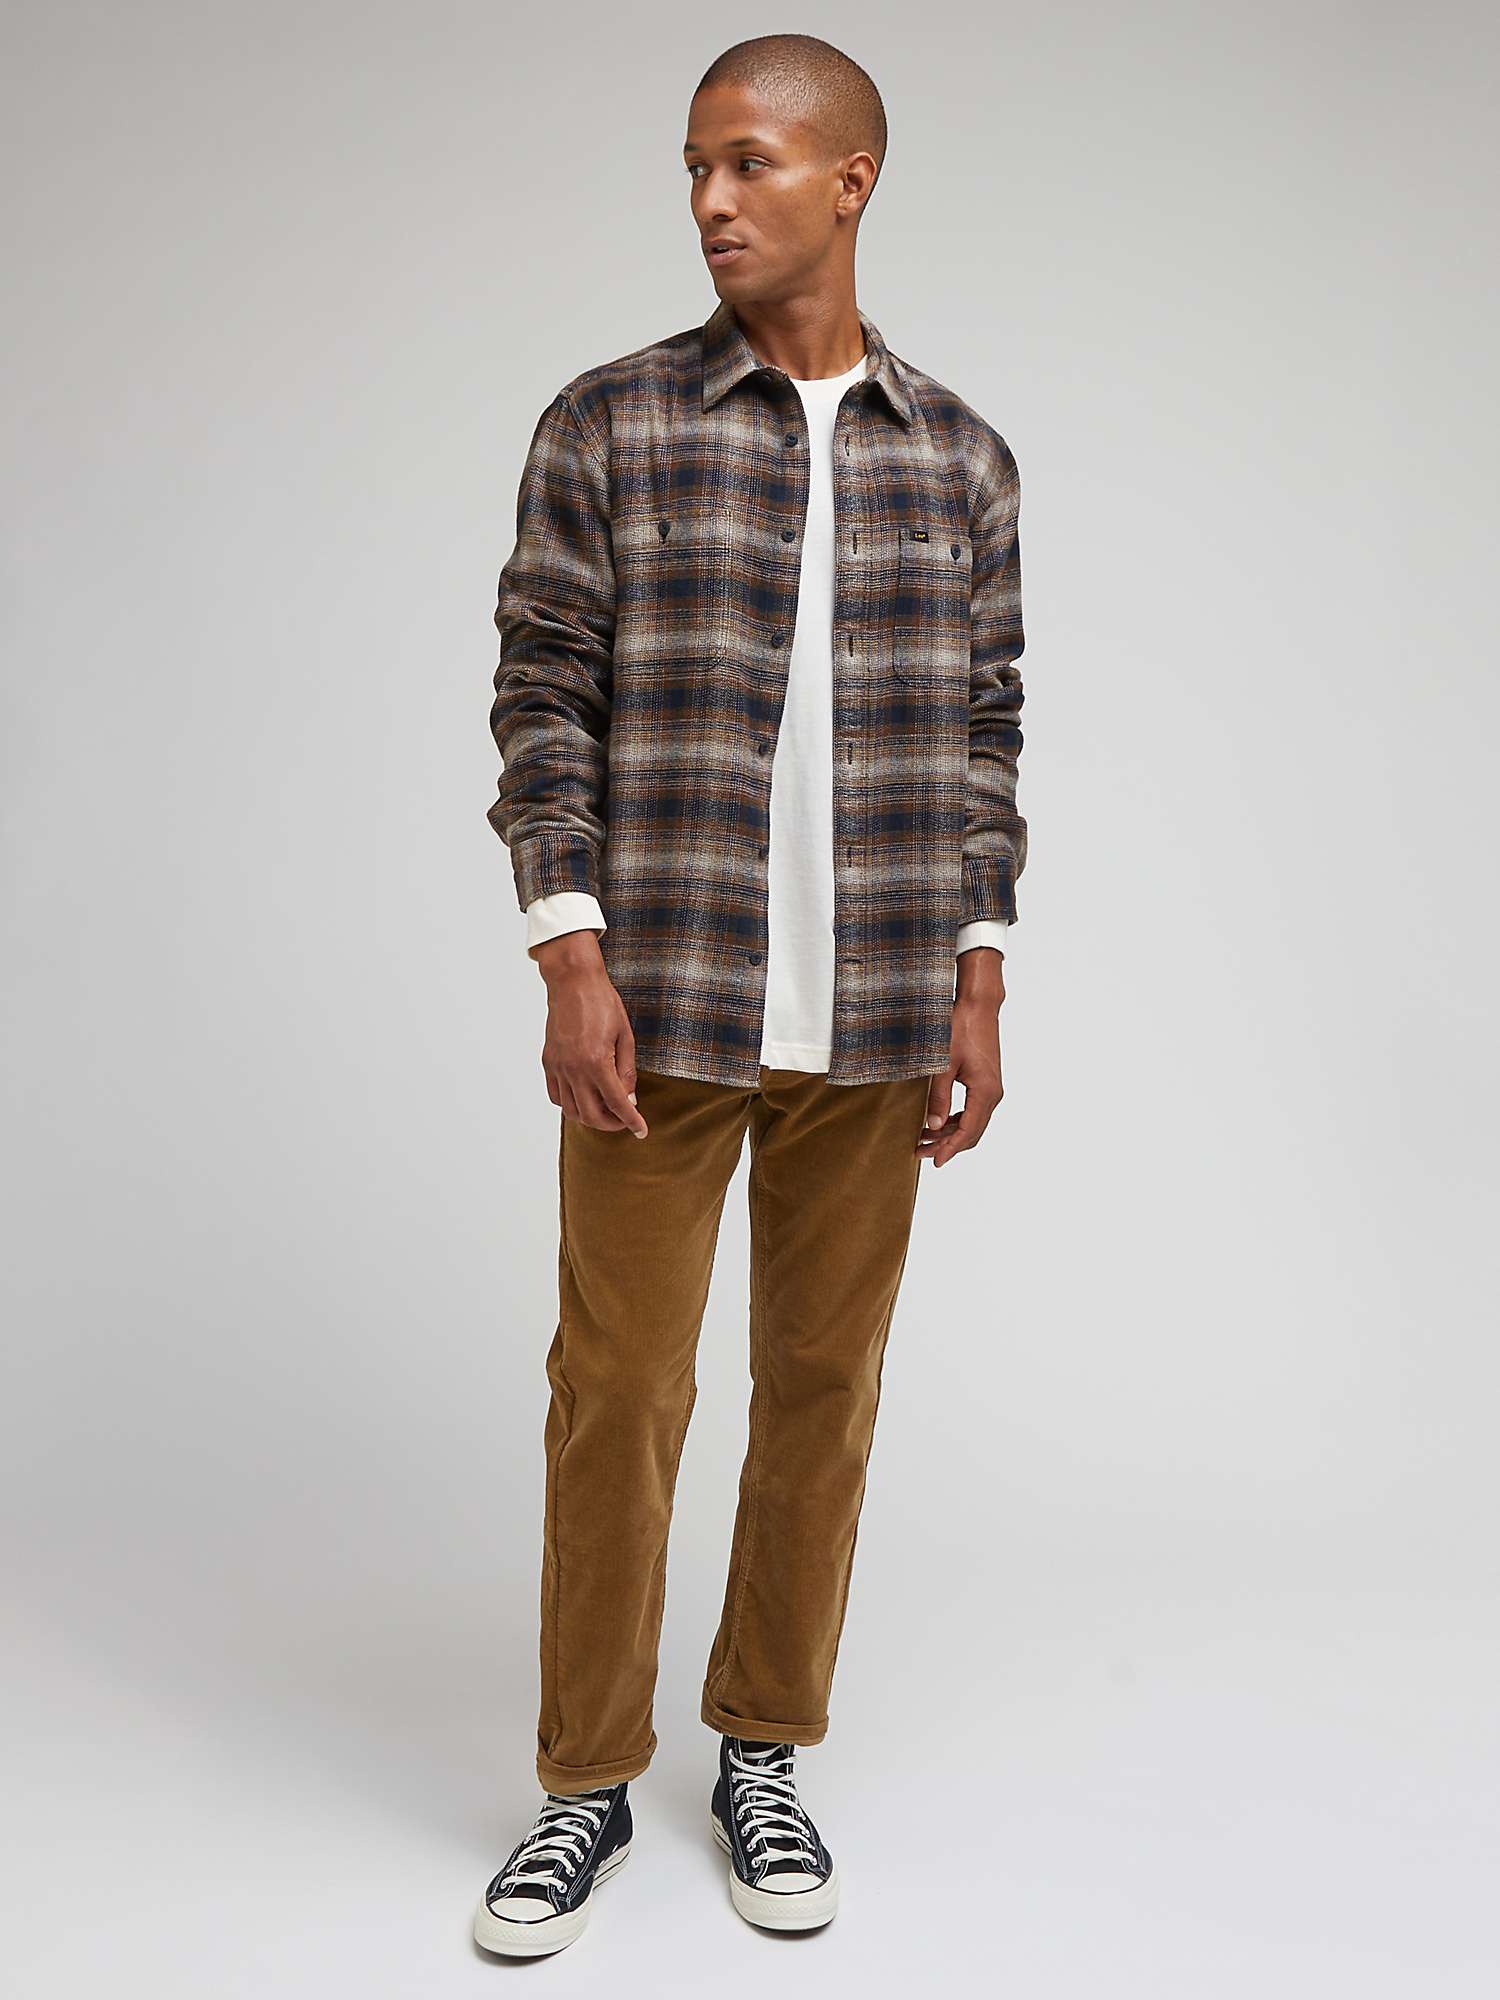 Buy Lee Worker Long Sleeve Shirt, Brown/Multi Online at johnlewis.com